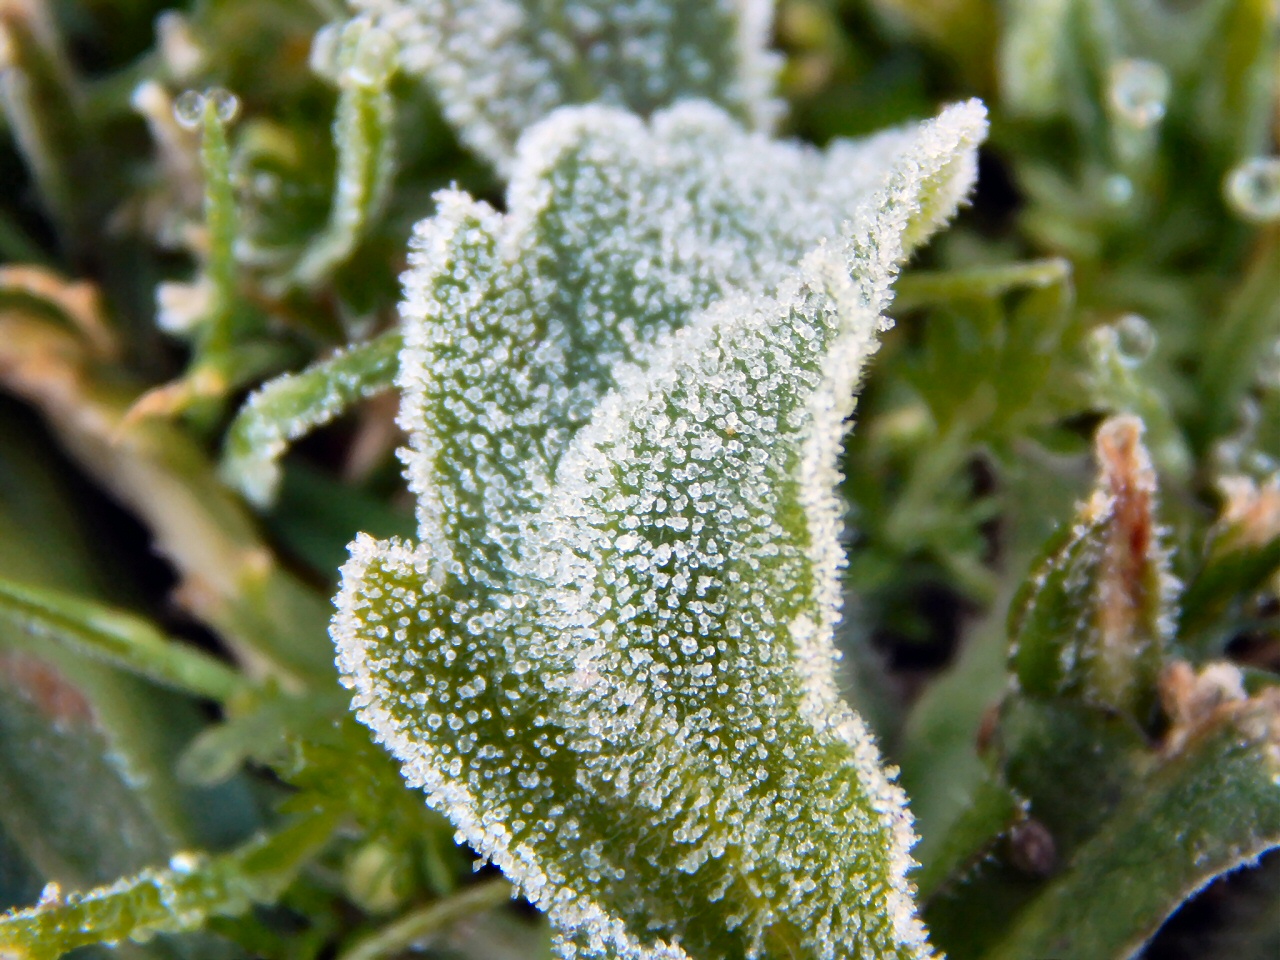 Hielo como azúcar. Los pequeños cristales de hielo se asemejan a granos de azúcar sobre las hojas de las plantas (Gustavo Demaria).